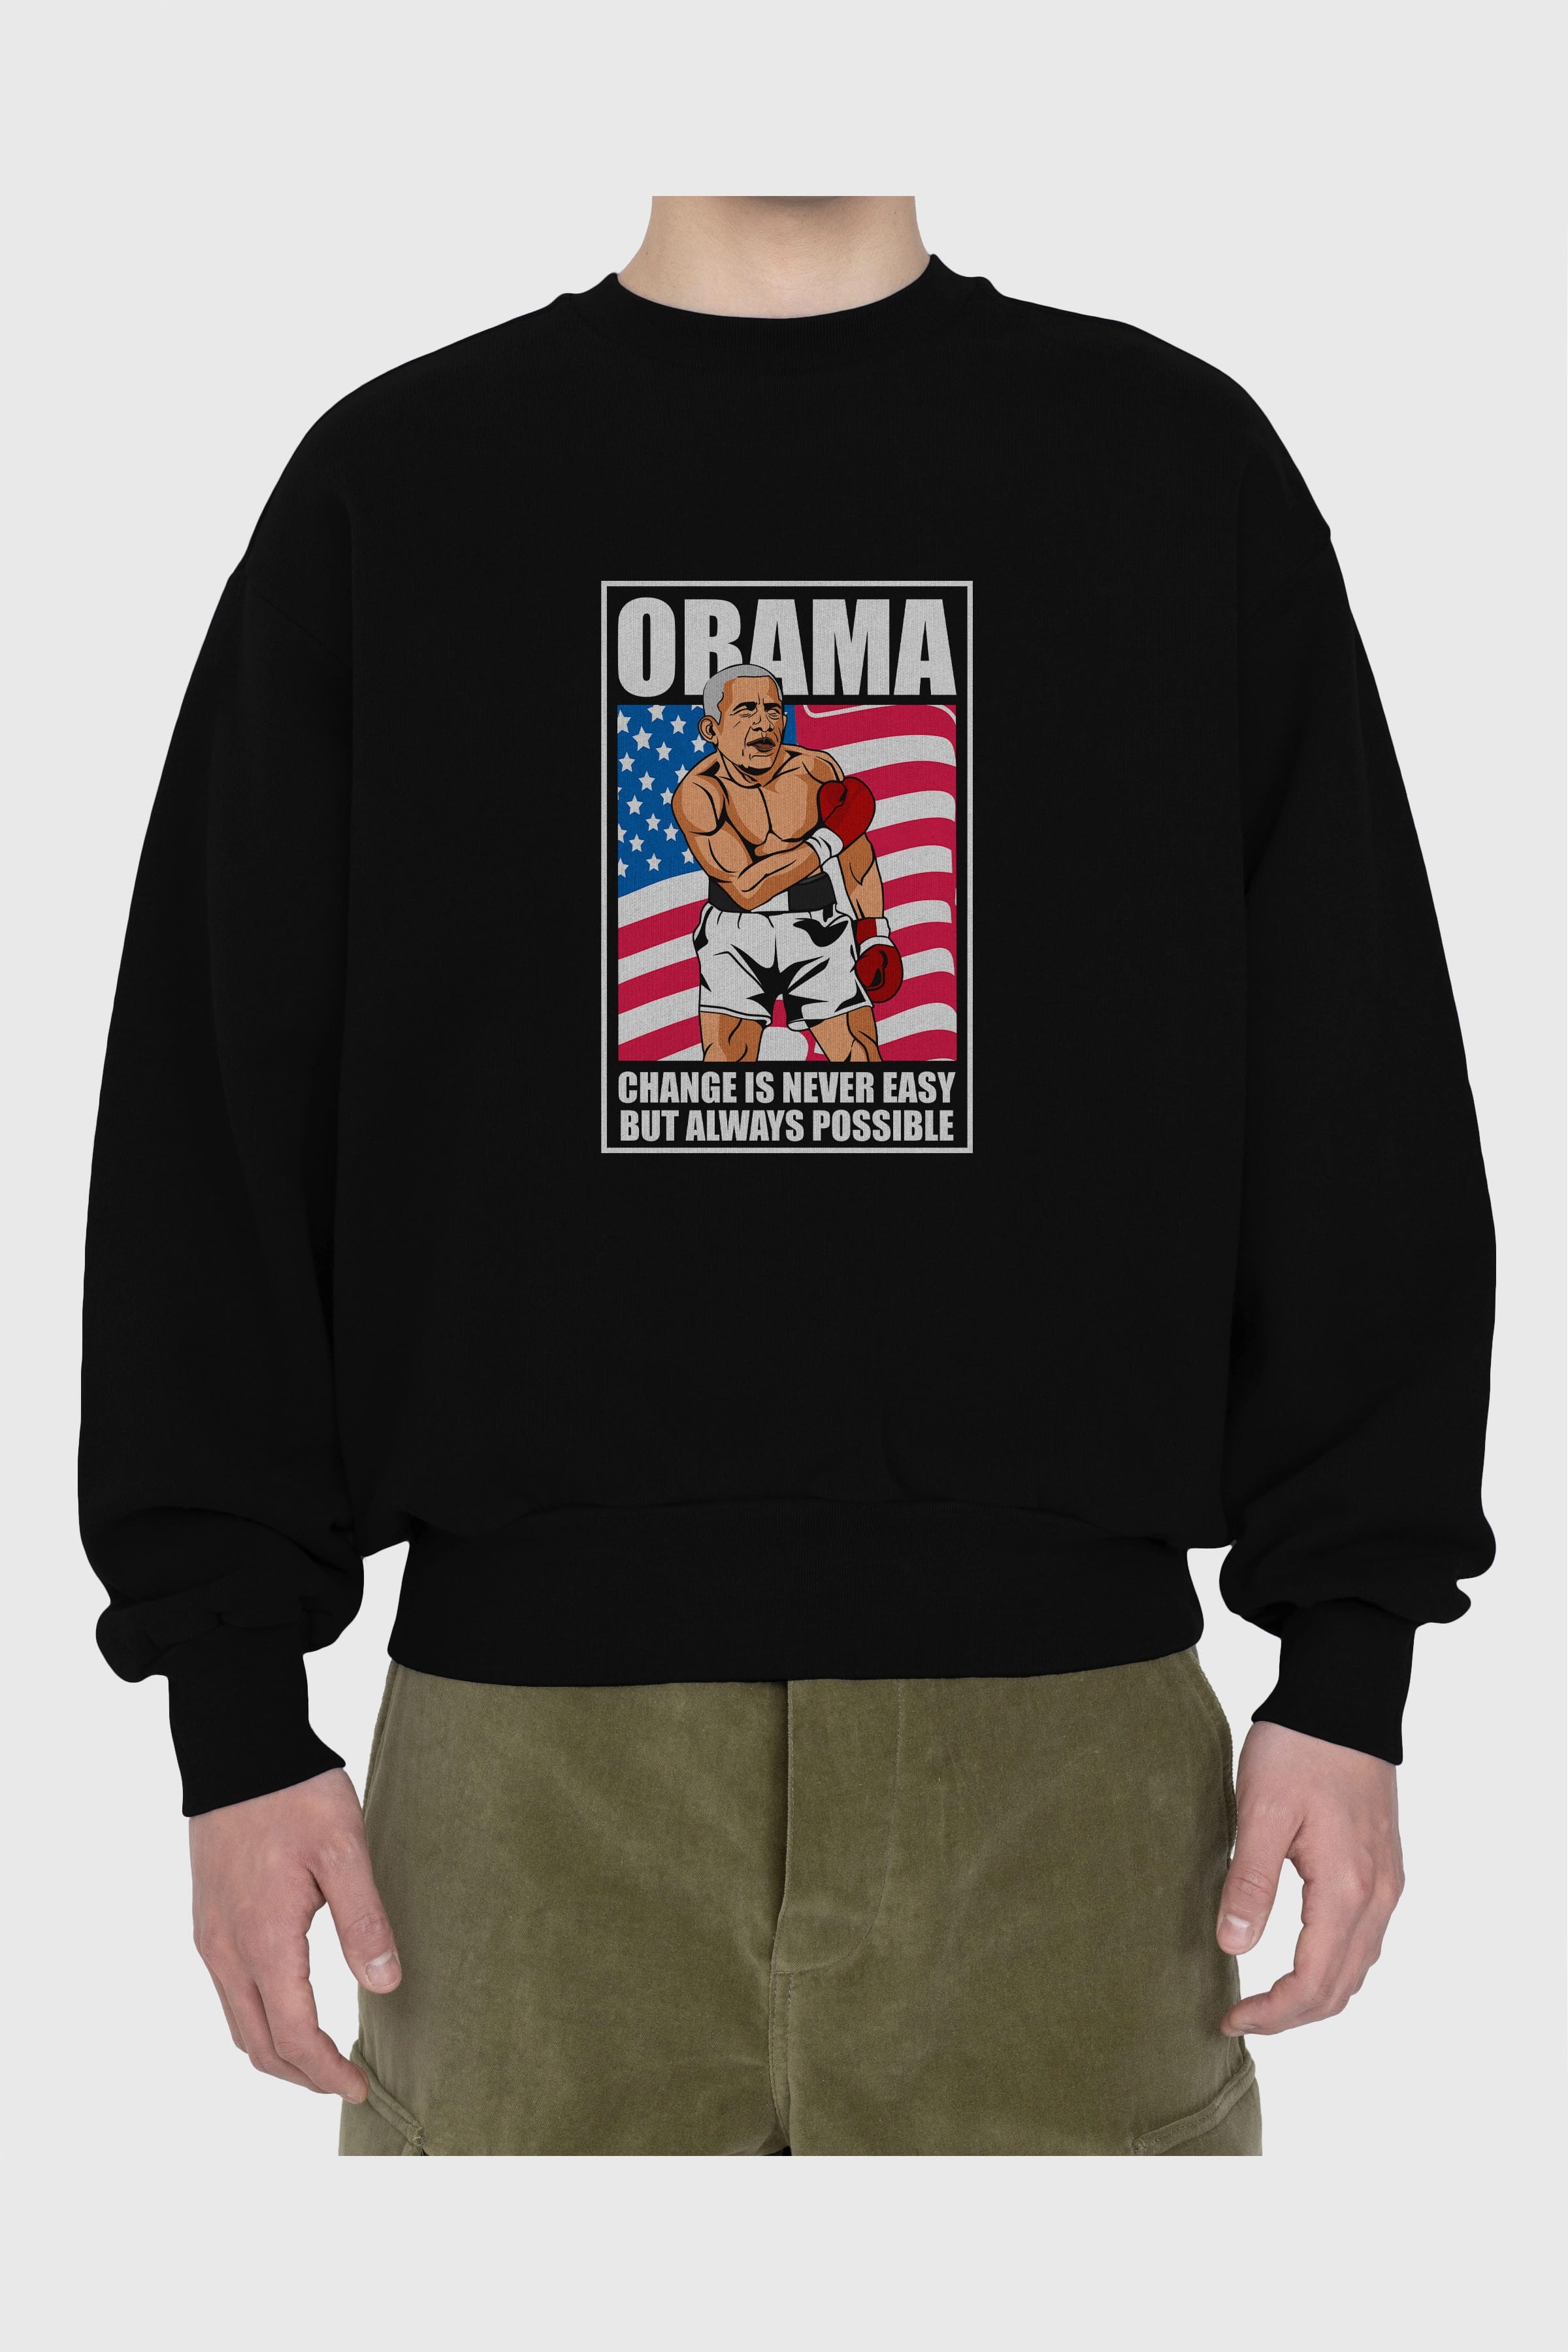 Obama Ön Baskılı Oversize Sweatshirt Erkek Kadın Unisex